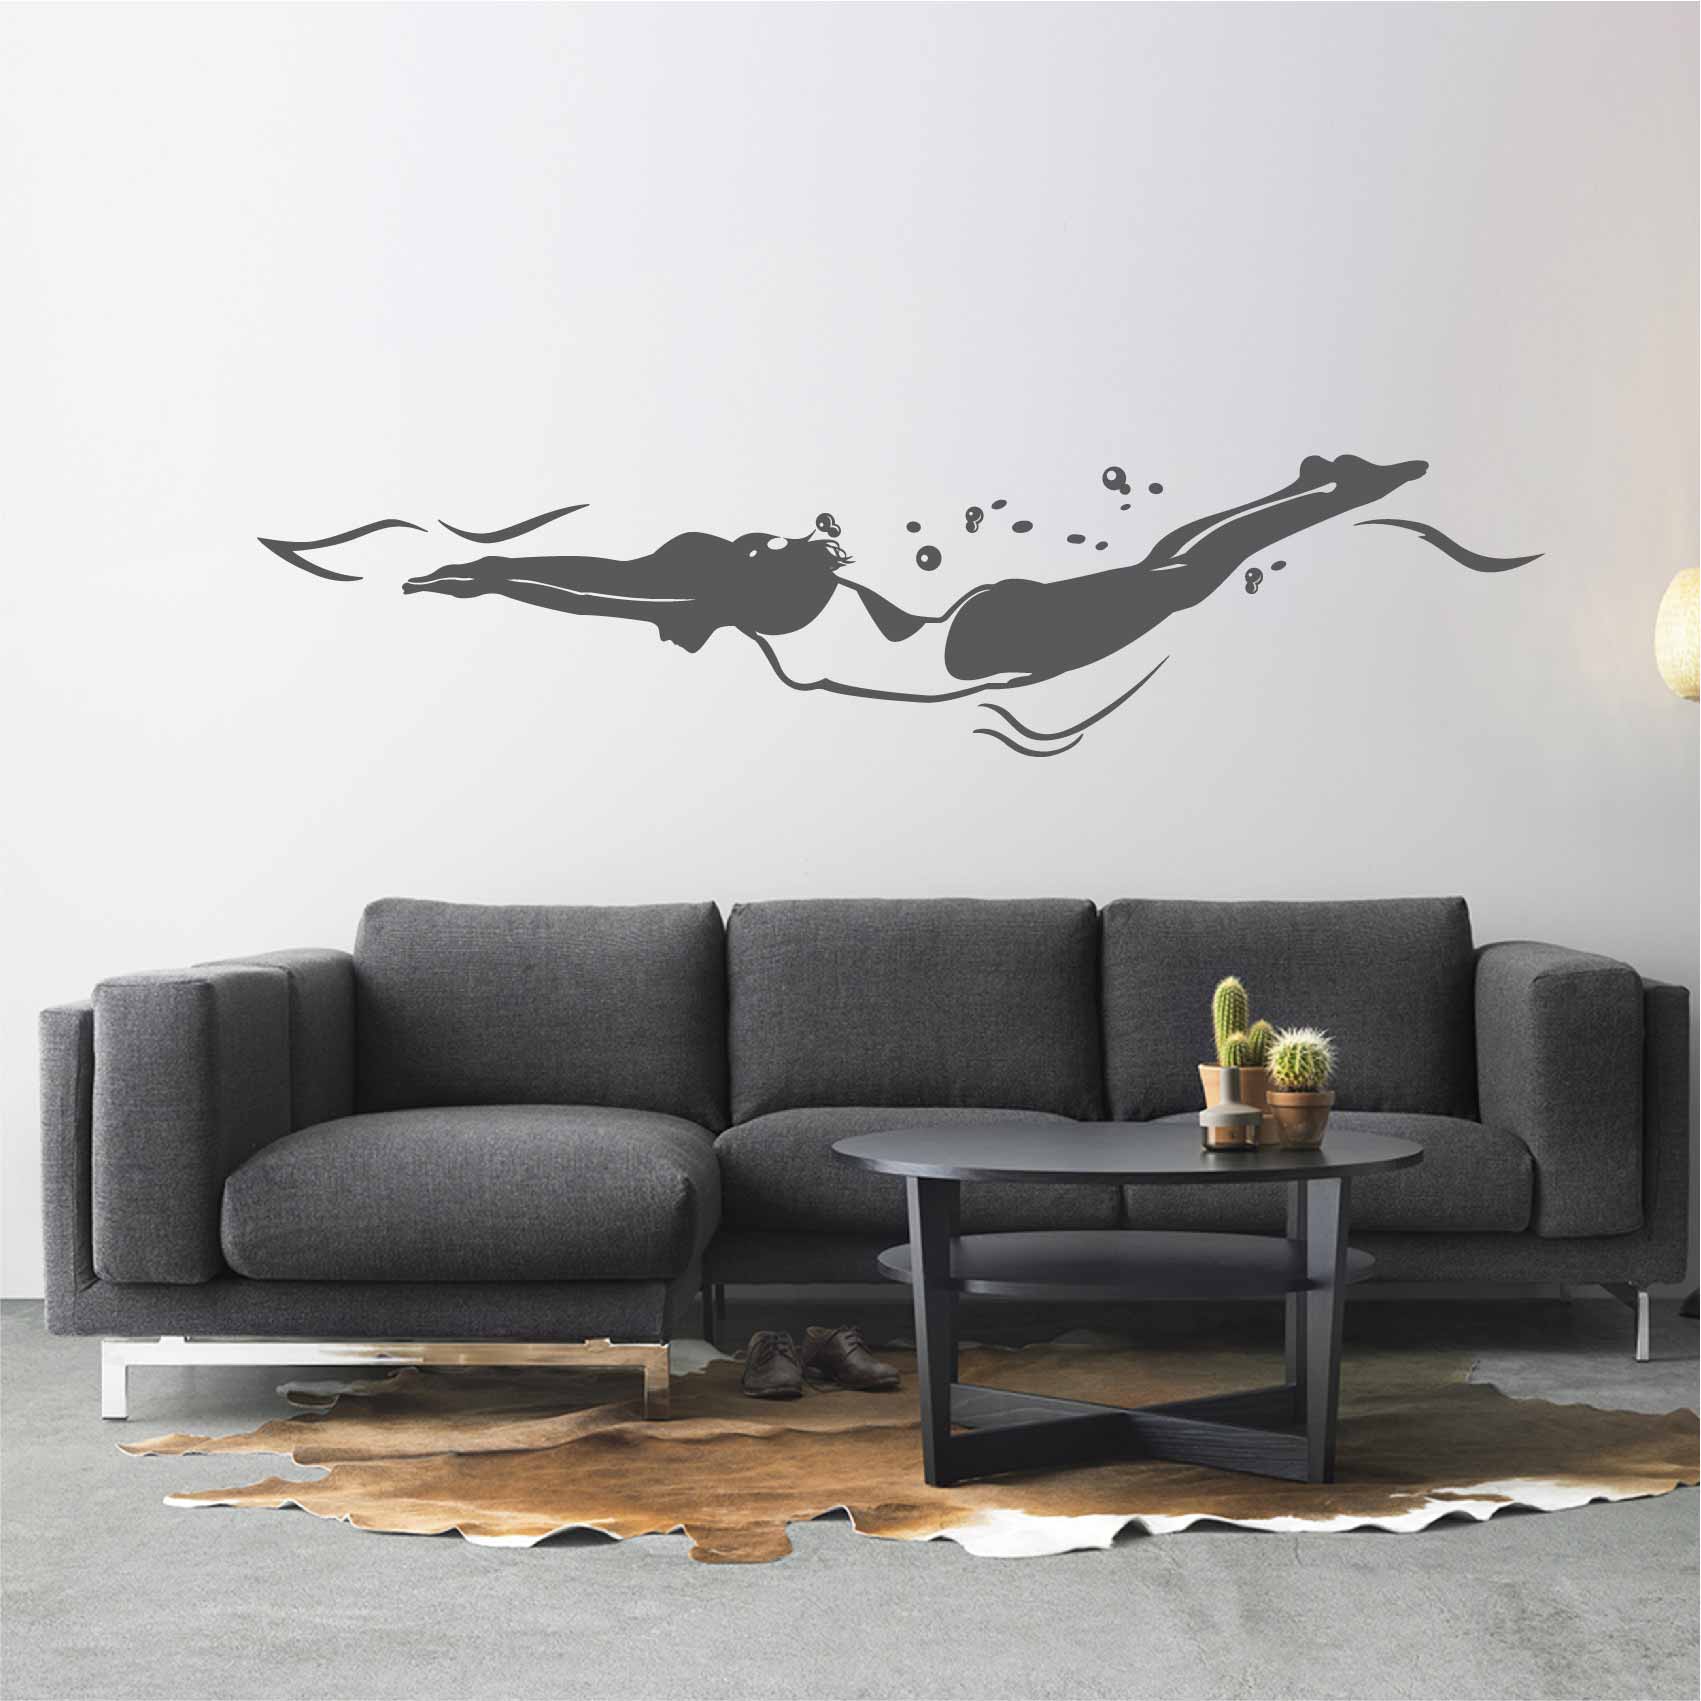 stickers-natation-ref50silhouette-stickers-muraux-silhouette-autocollant-chambre-salon-sticker-mural-ombre